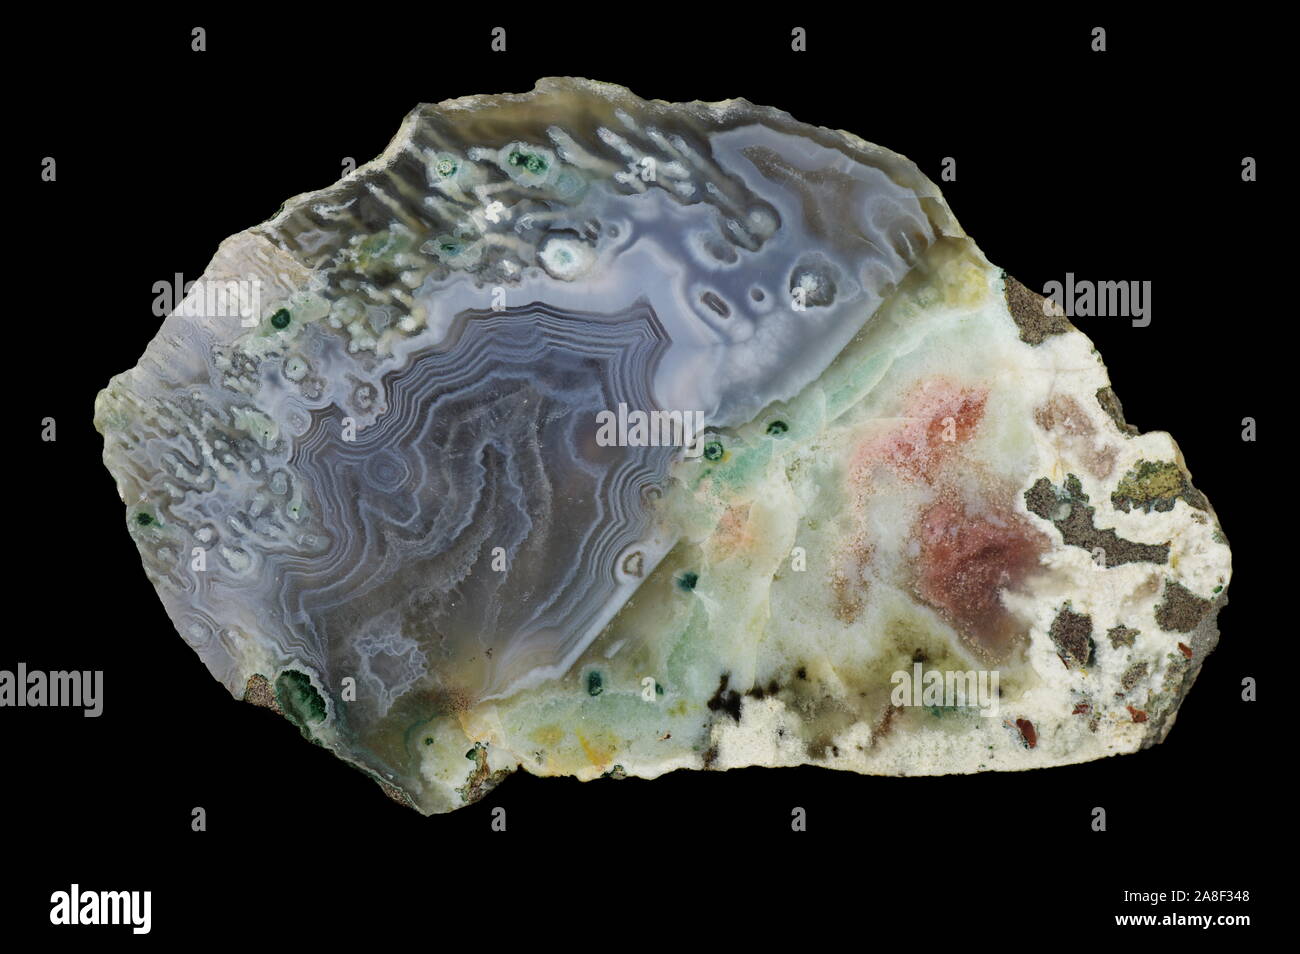 Agata, fotografia macro della superficie di taglio. Multicolore bande di silice colorata con ossidi metallici sono visibili. Origine: Rudno nei pressi di Cracovia, Polan Foto Stock